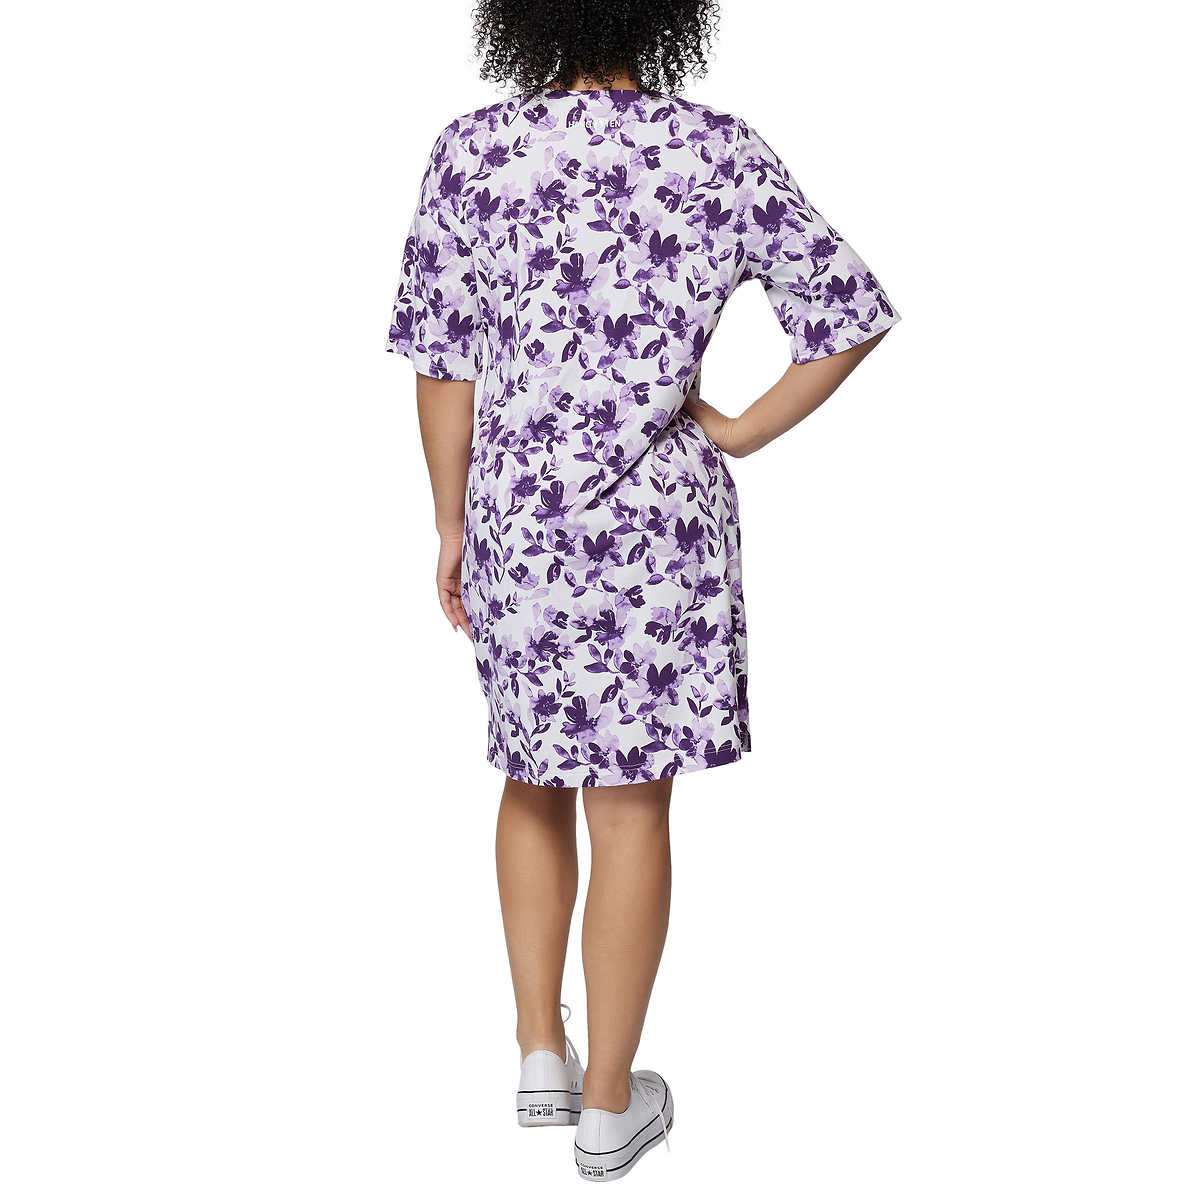 Hang Ten Women's Floral Print UPF 50+ Moisture Wicking Soft Cotton Blend Mini Sun Dress